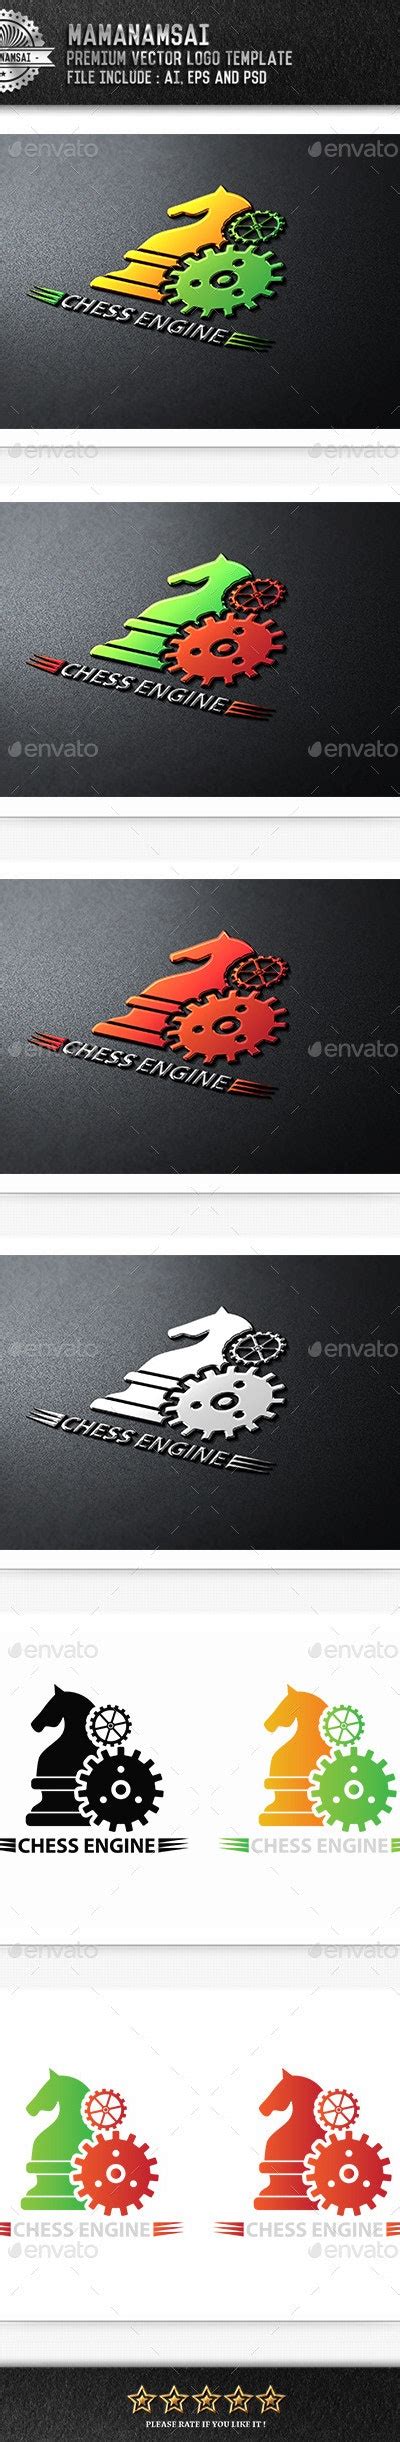 Chess Engine Logo Logo Templates Graphicriver